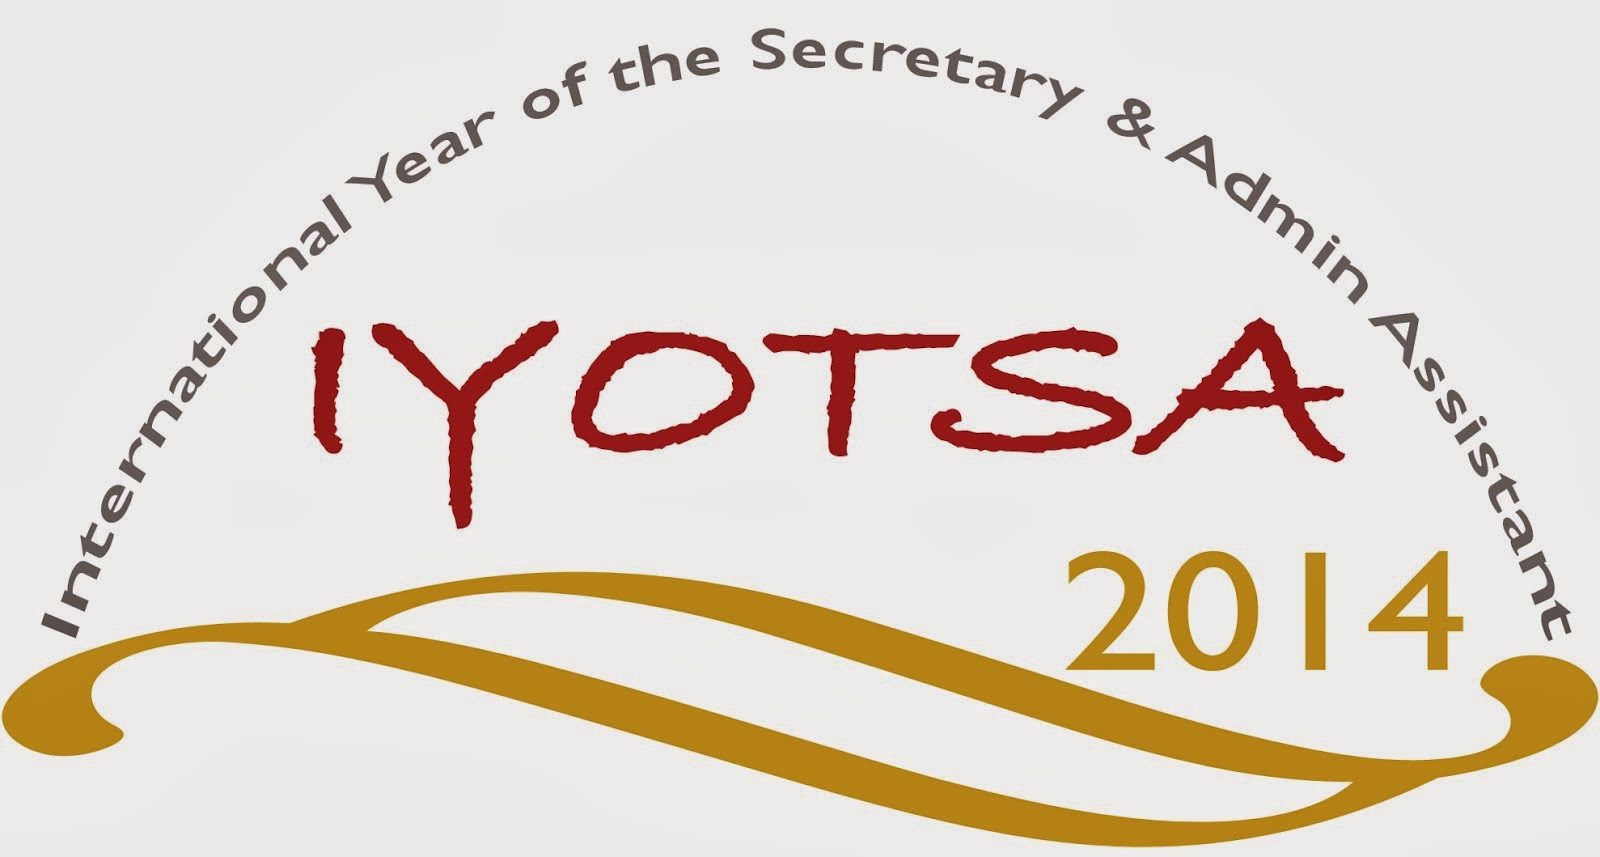 2014: International Year of the Secretary and Assistant - SEiEM, Embajadora por España